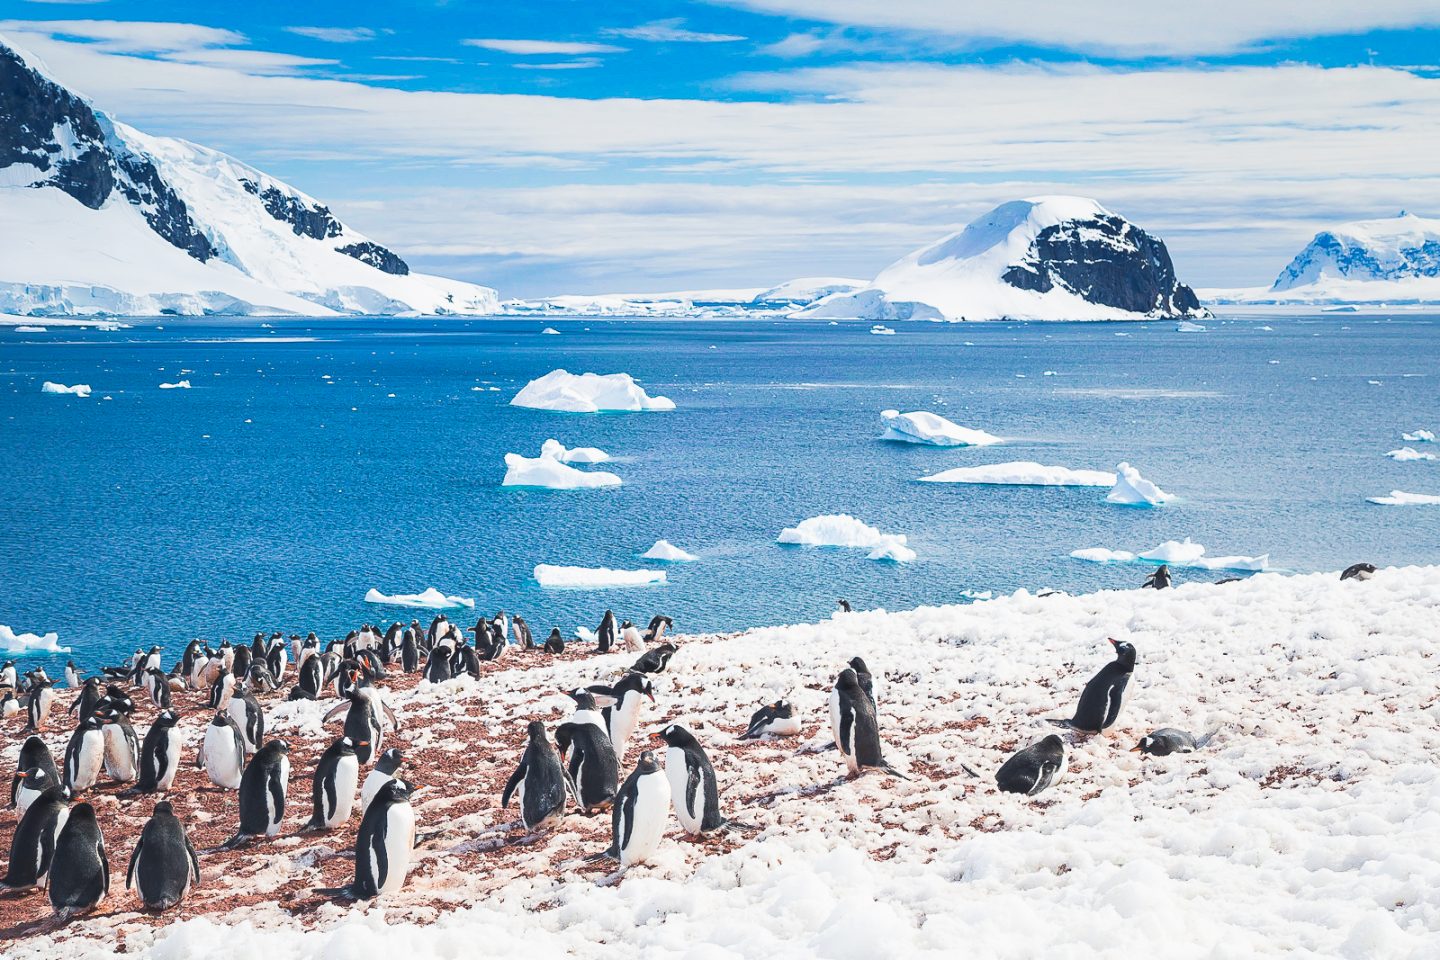 Gentoo penguin rookery on Danco Island, Antarctica